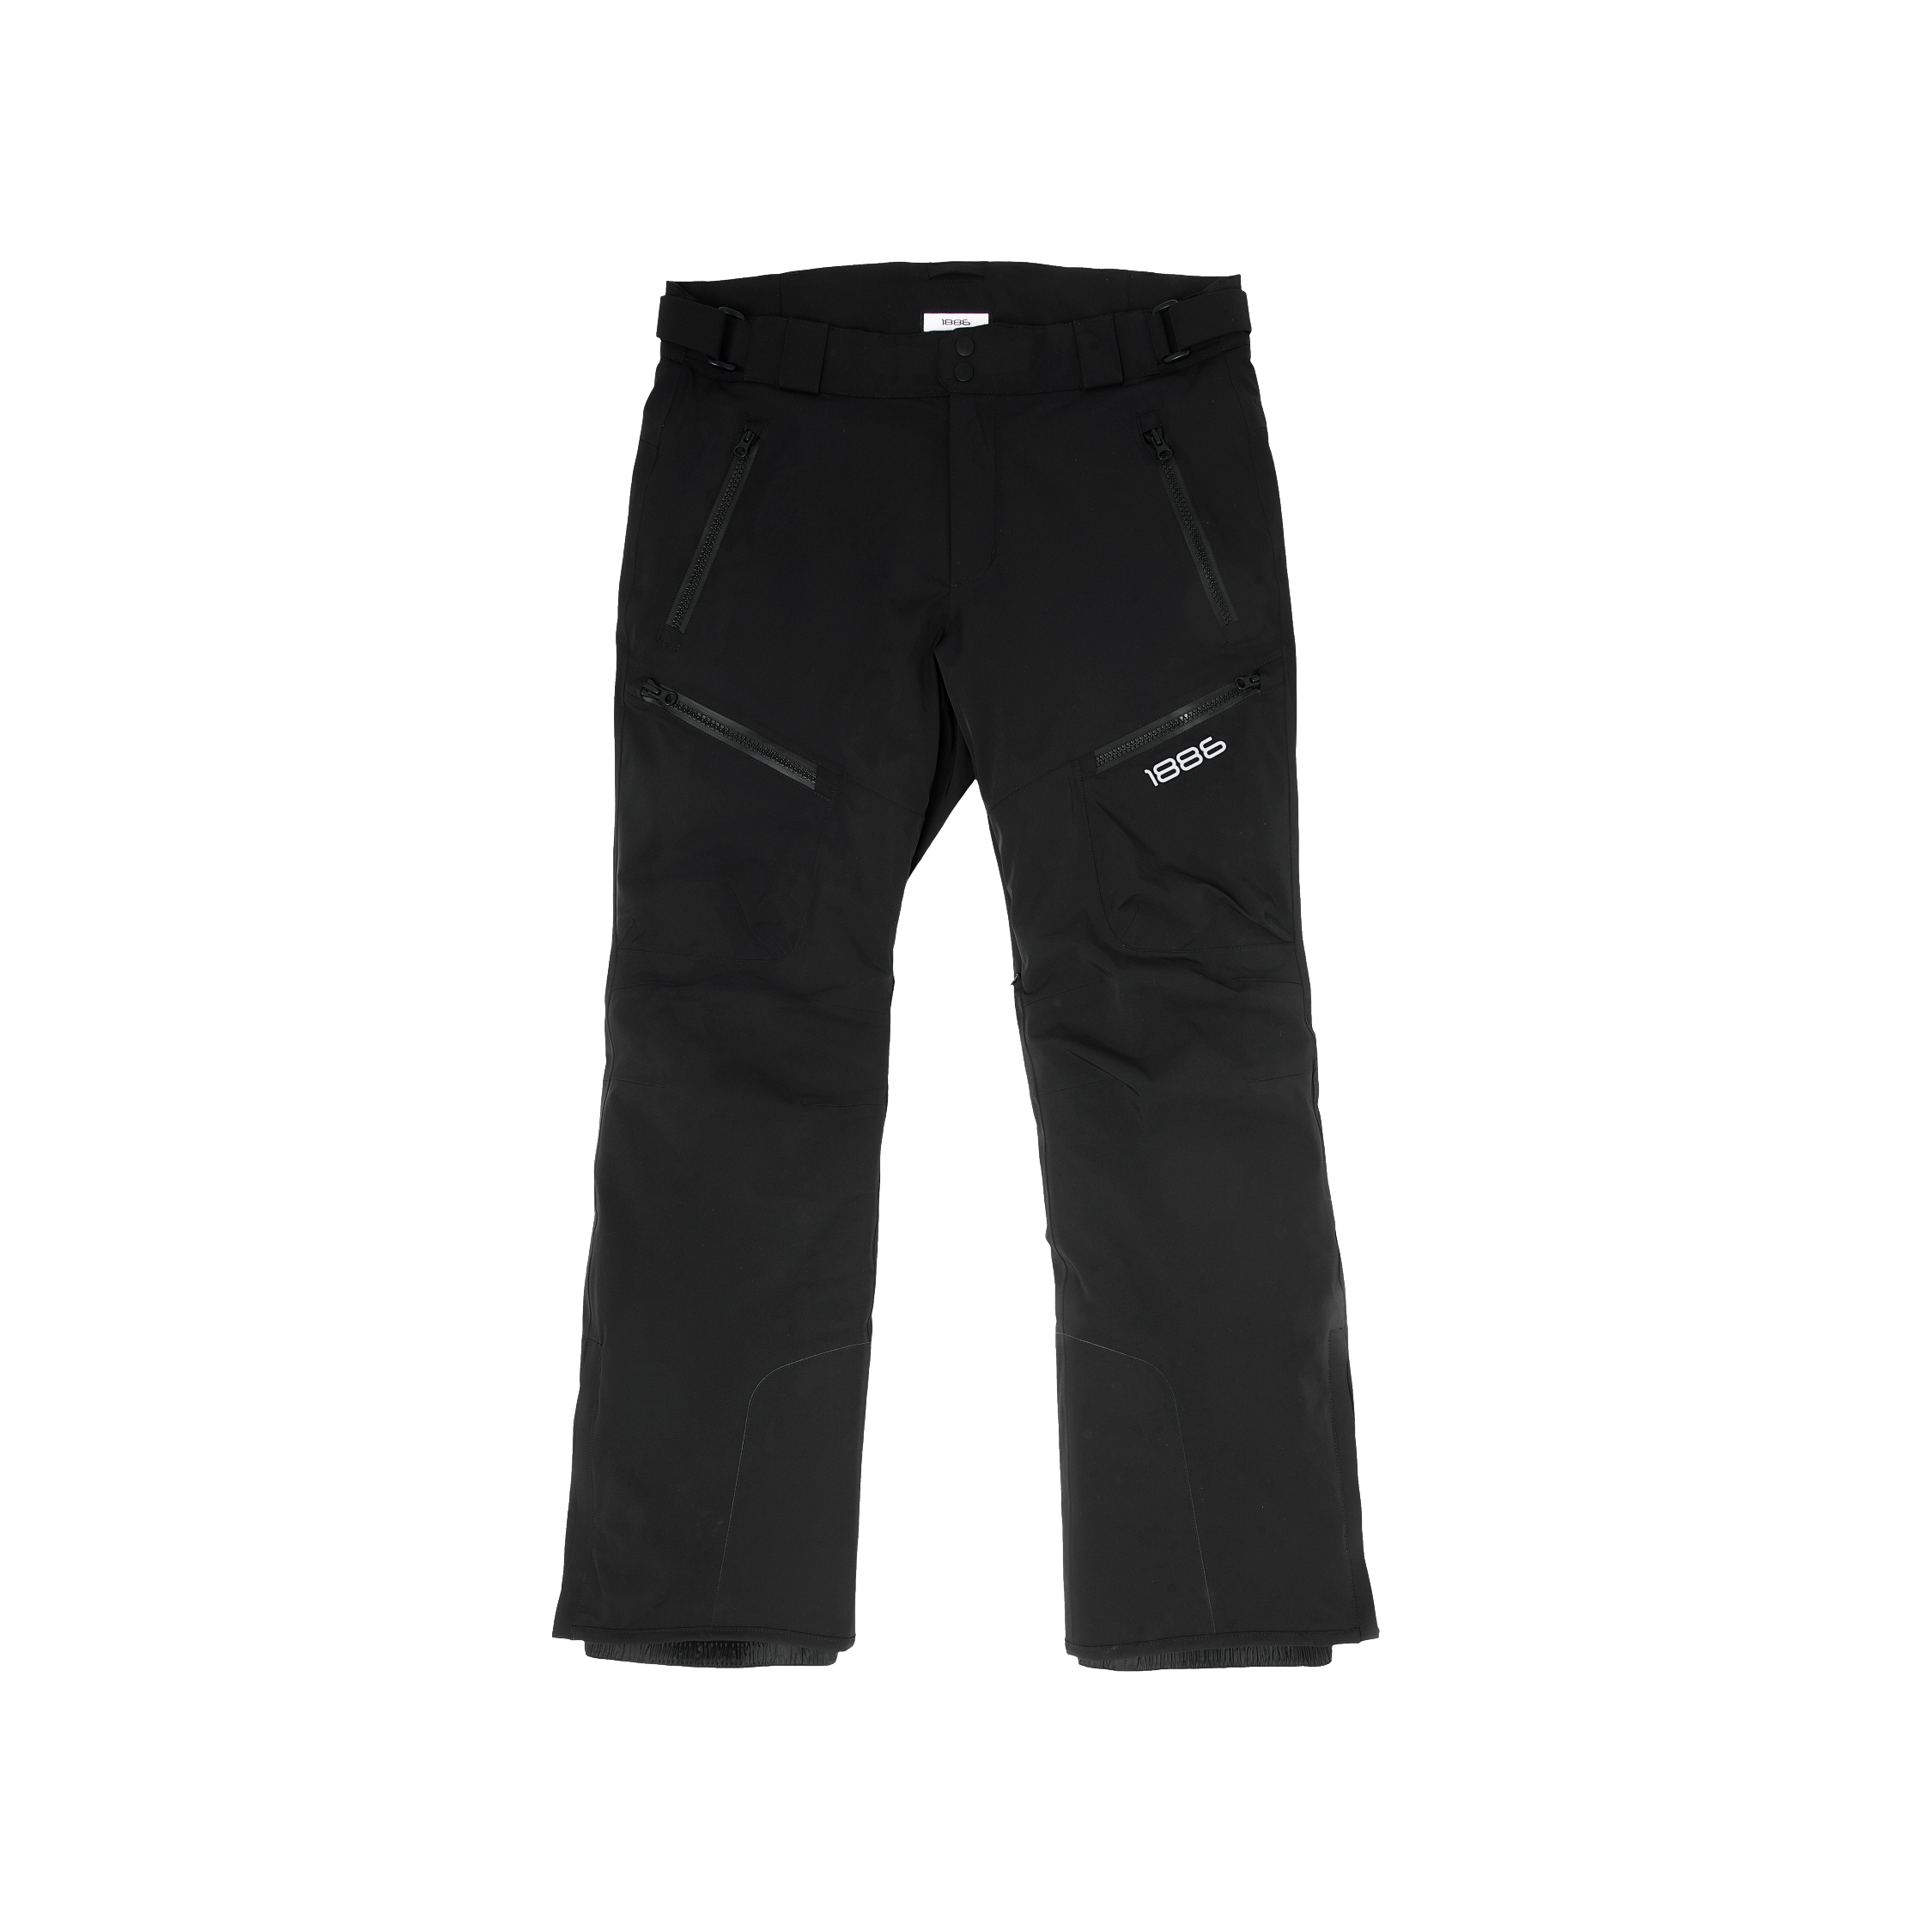 Black Ski Pant - Black – 1886 fashion